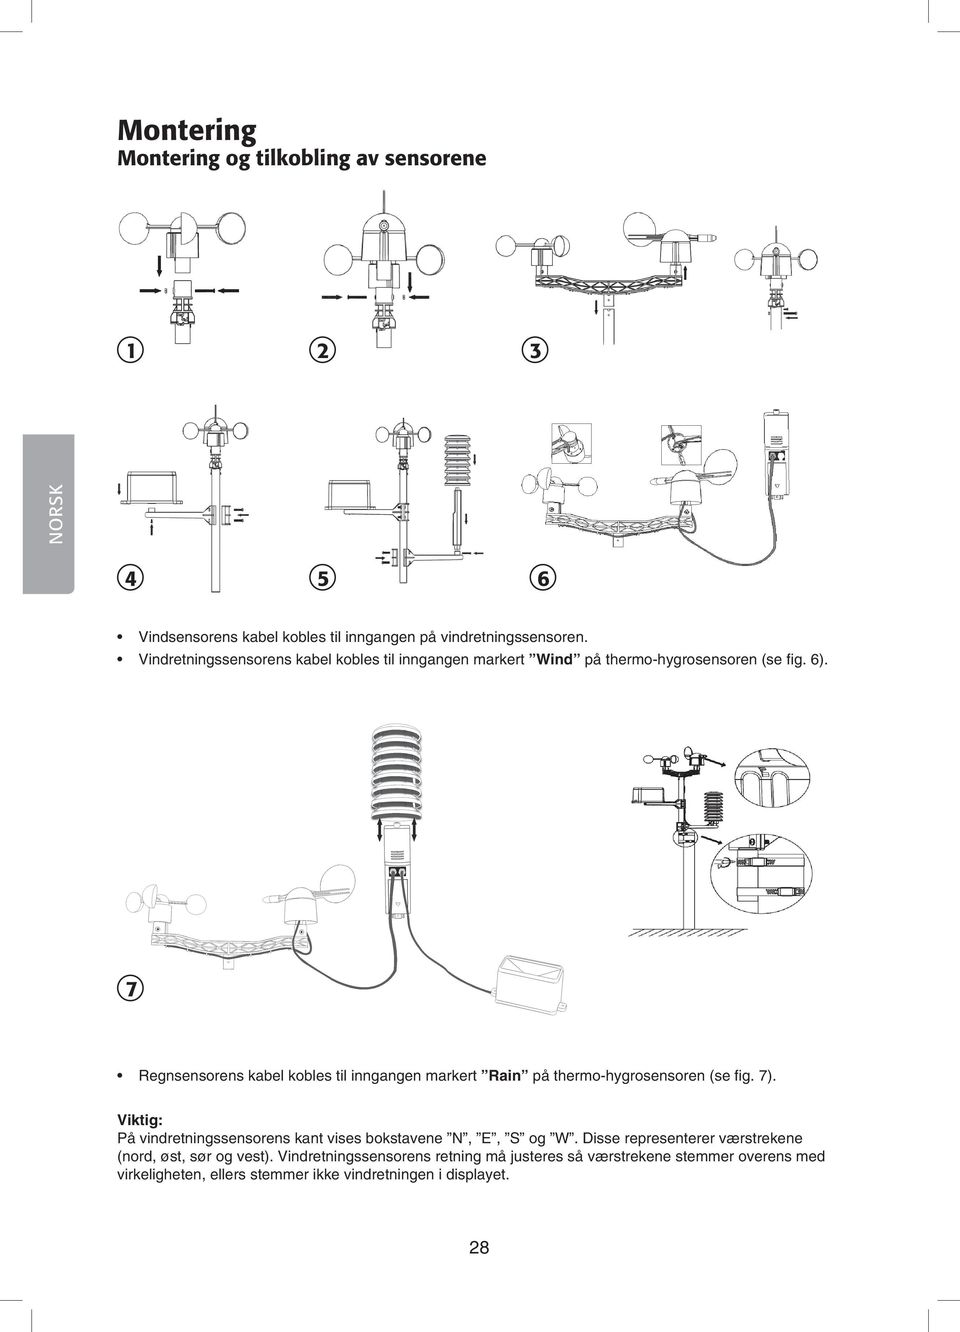 7 Regnsensorens kabel kobles til inngangen markert Rain på thermo-hygrosensoren (se fig. 7).